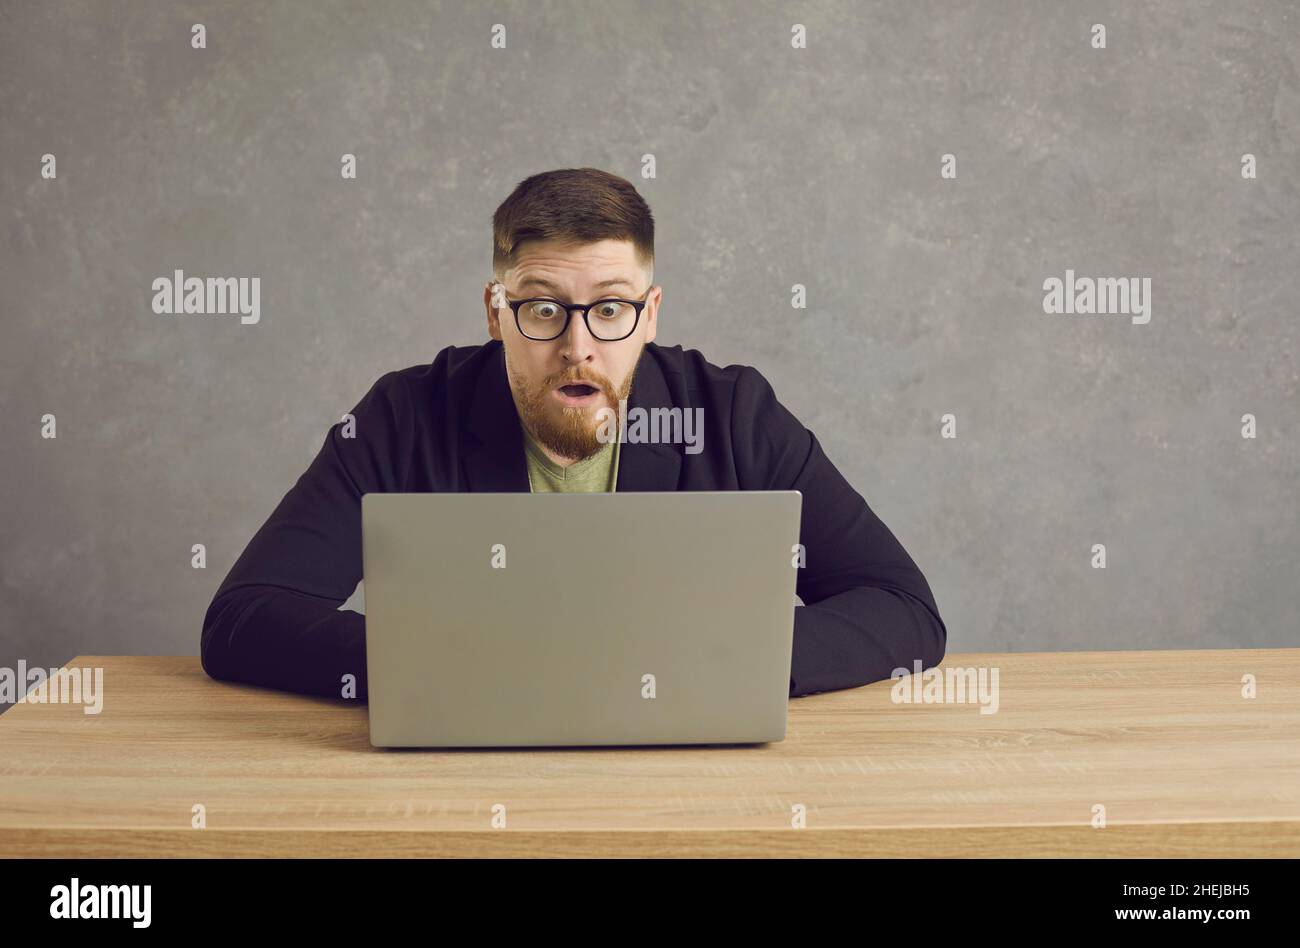 Homme caucasien avec une expression choquée, perplexe et effrayée regardant l'écran d'ordinateur portable. Banque D'Images